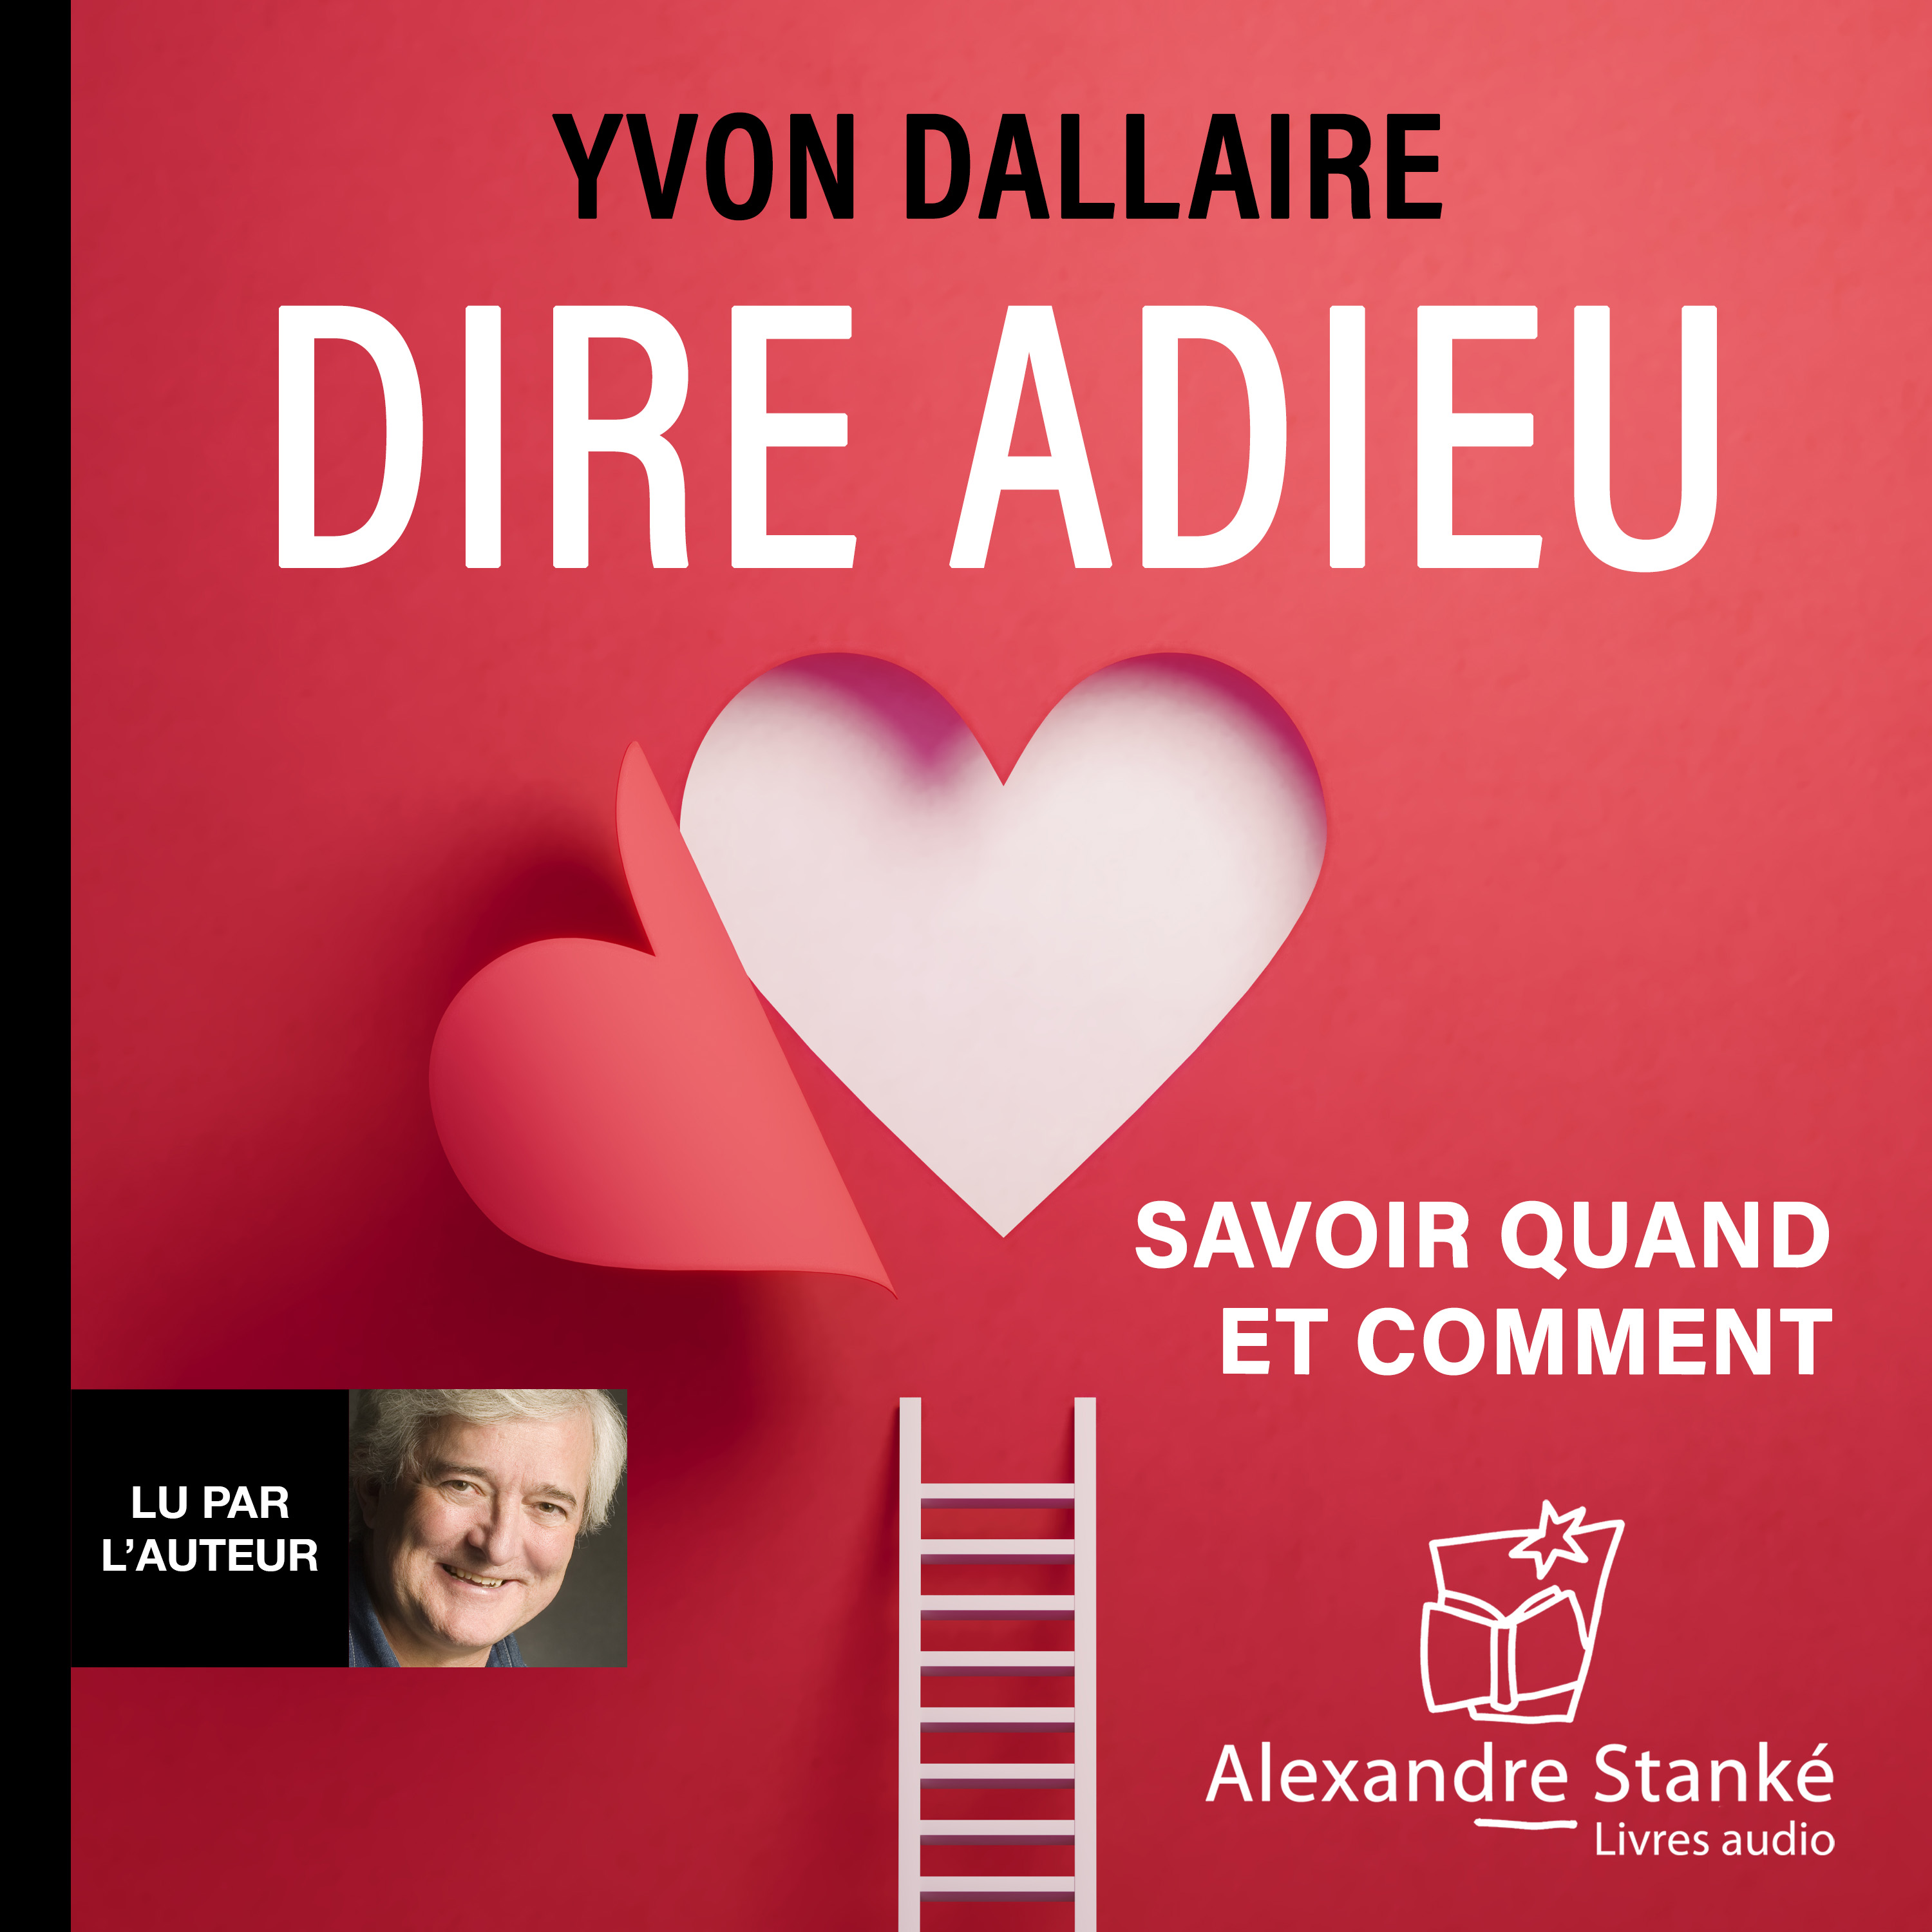 Couverture du livre audio Dire adieu De Yvon Dallaire 